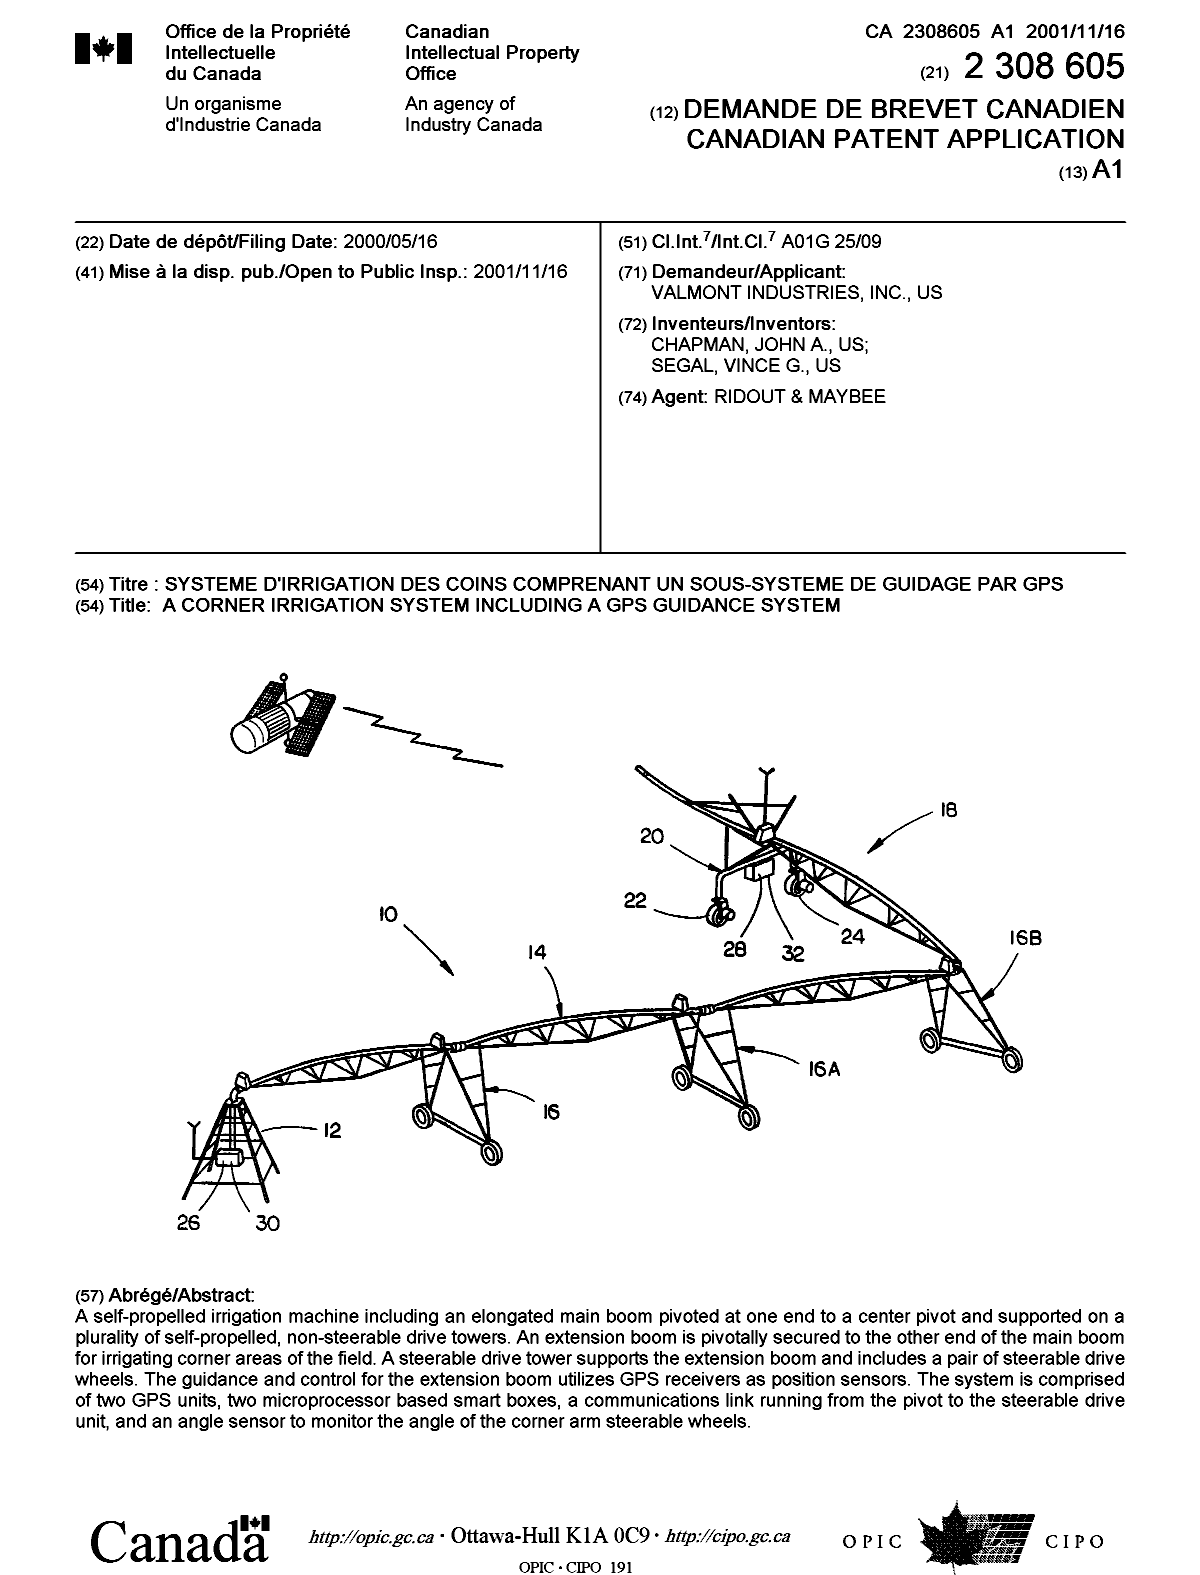 Document de brevet canadien 2308605. Page couverture 20011105. Image 1 de 1